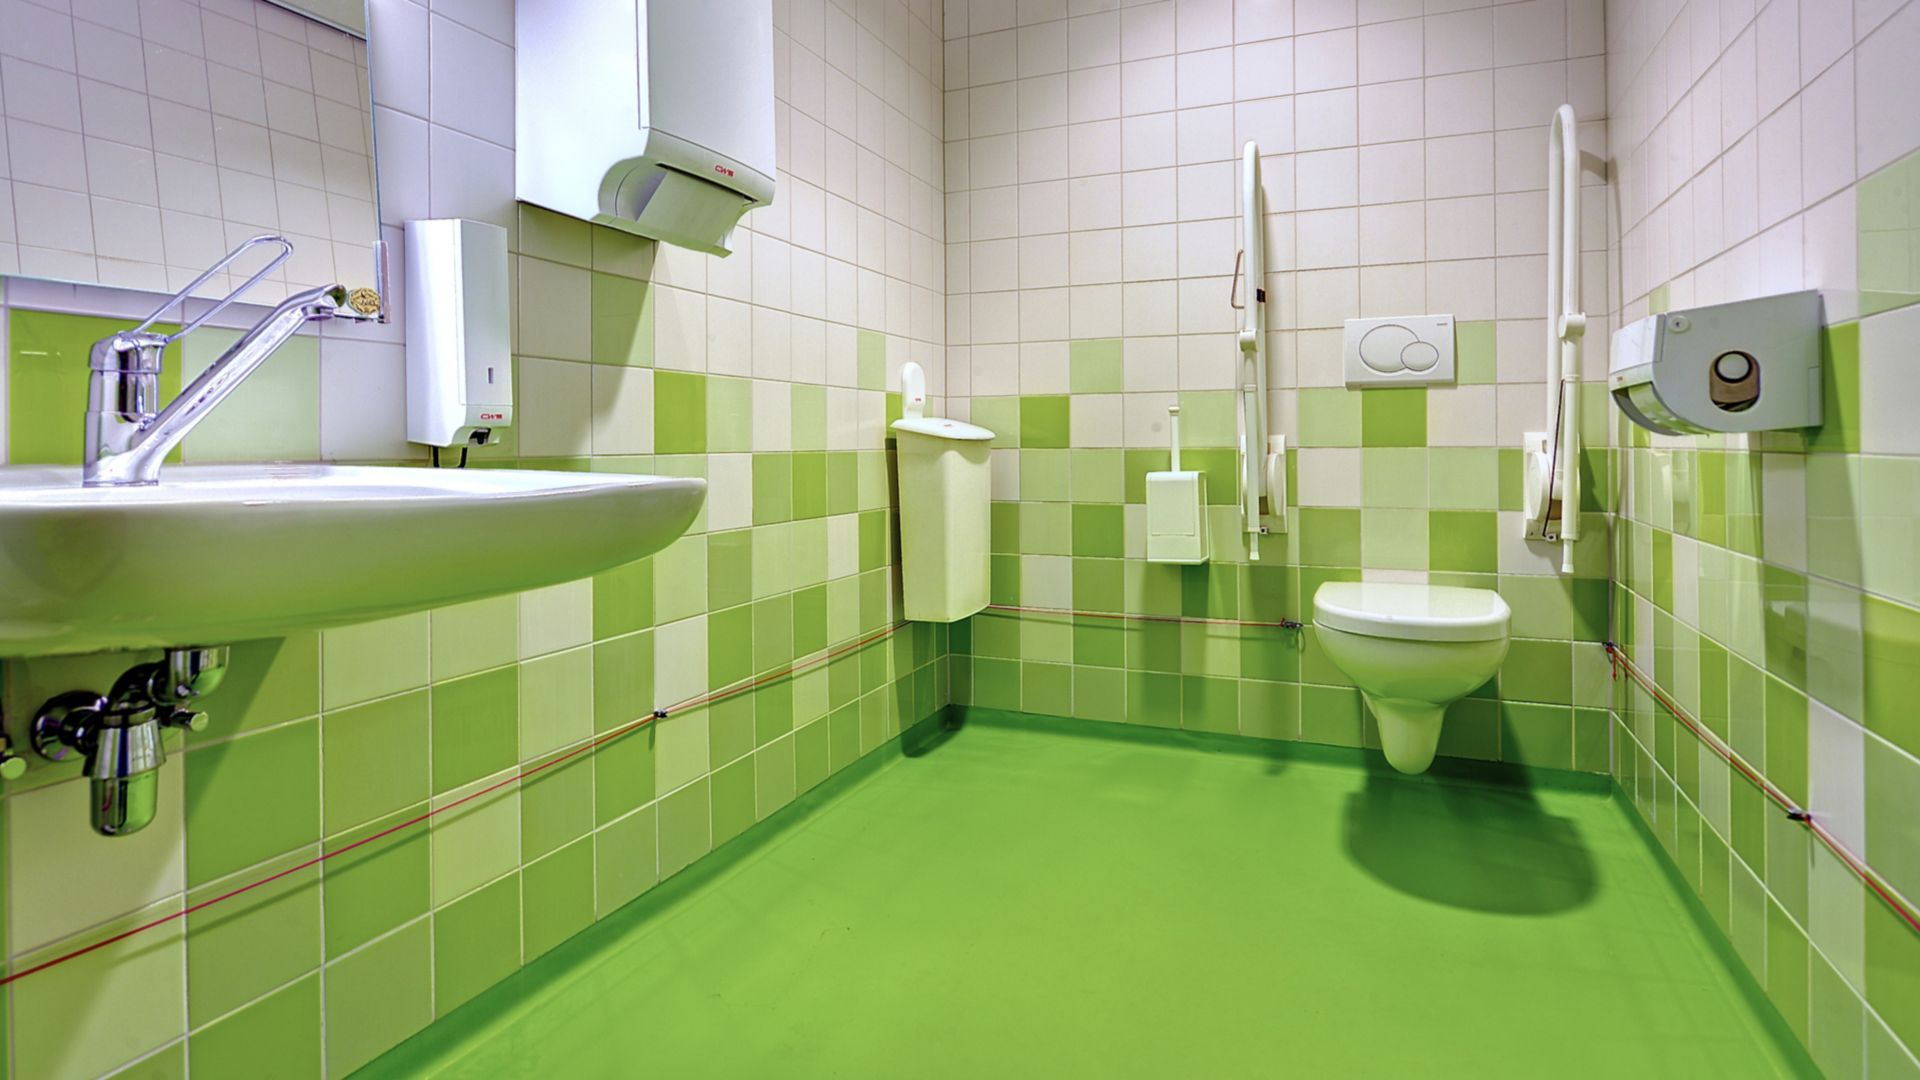 Decorative Comfortfloor green floor in hospital bathroom